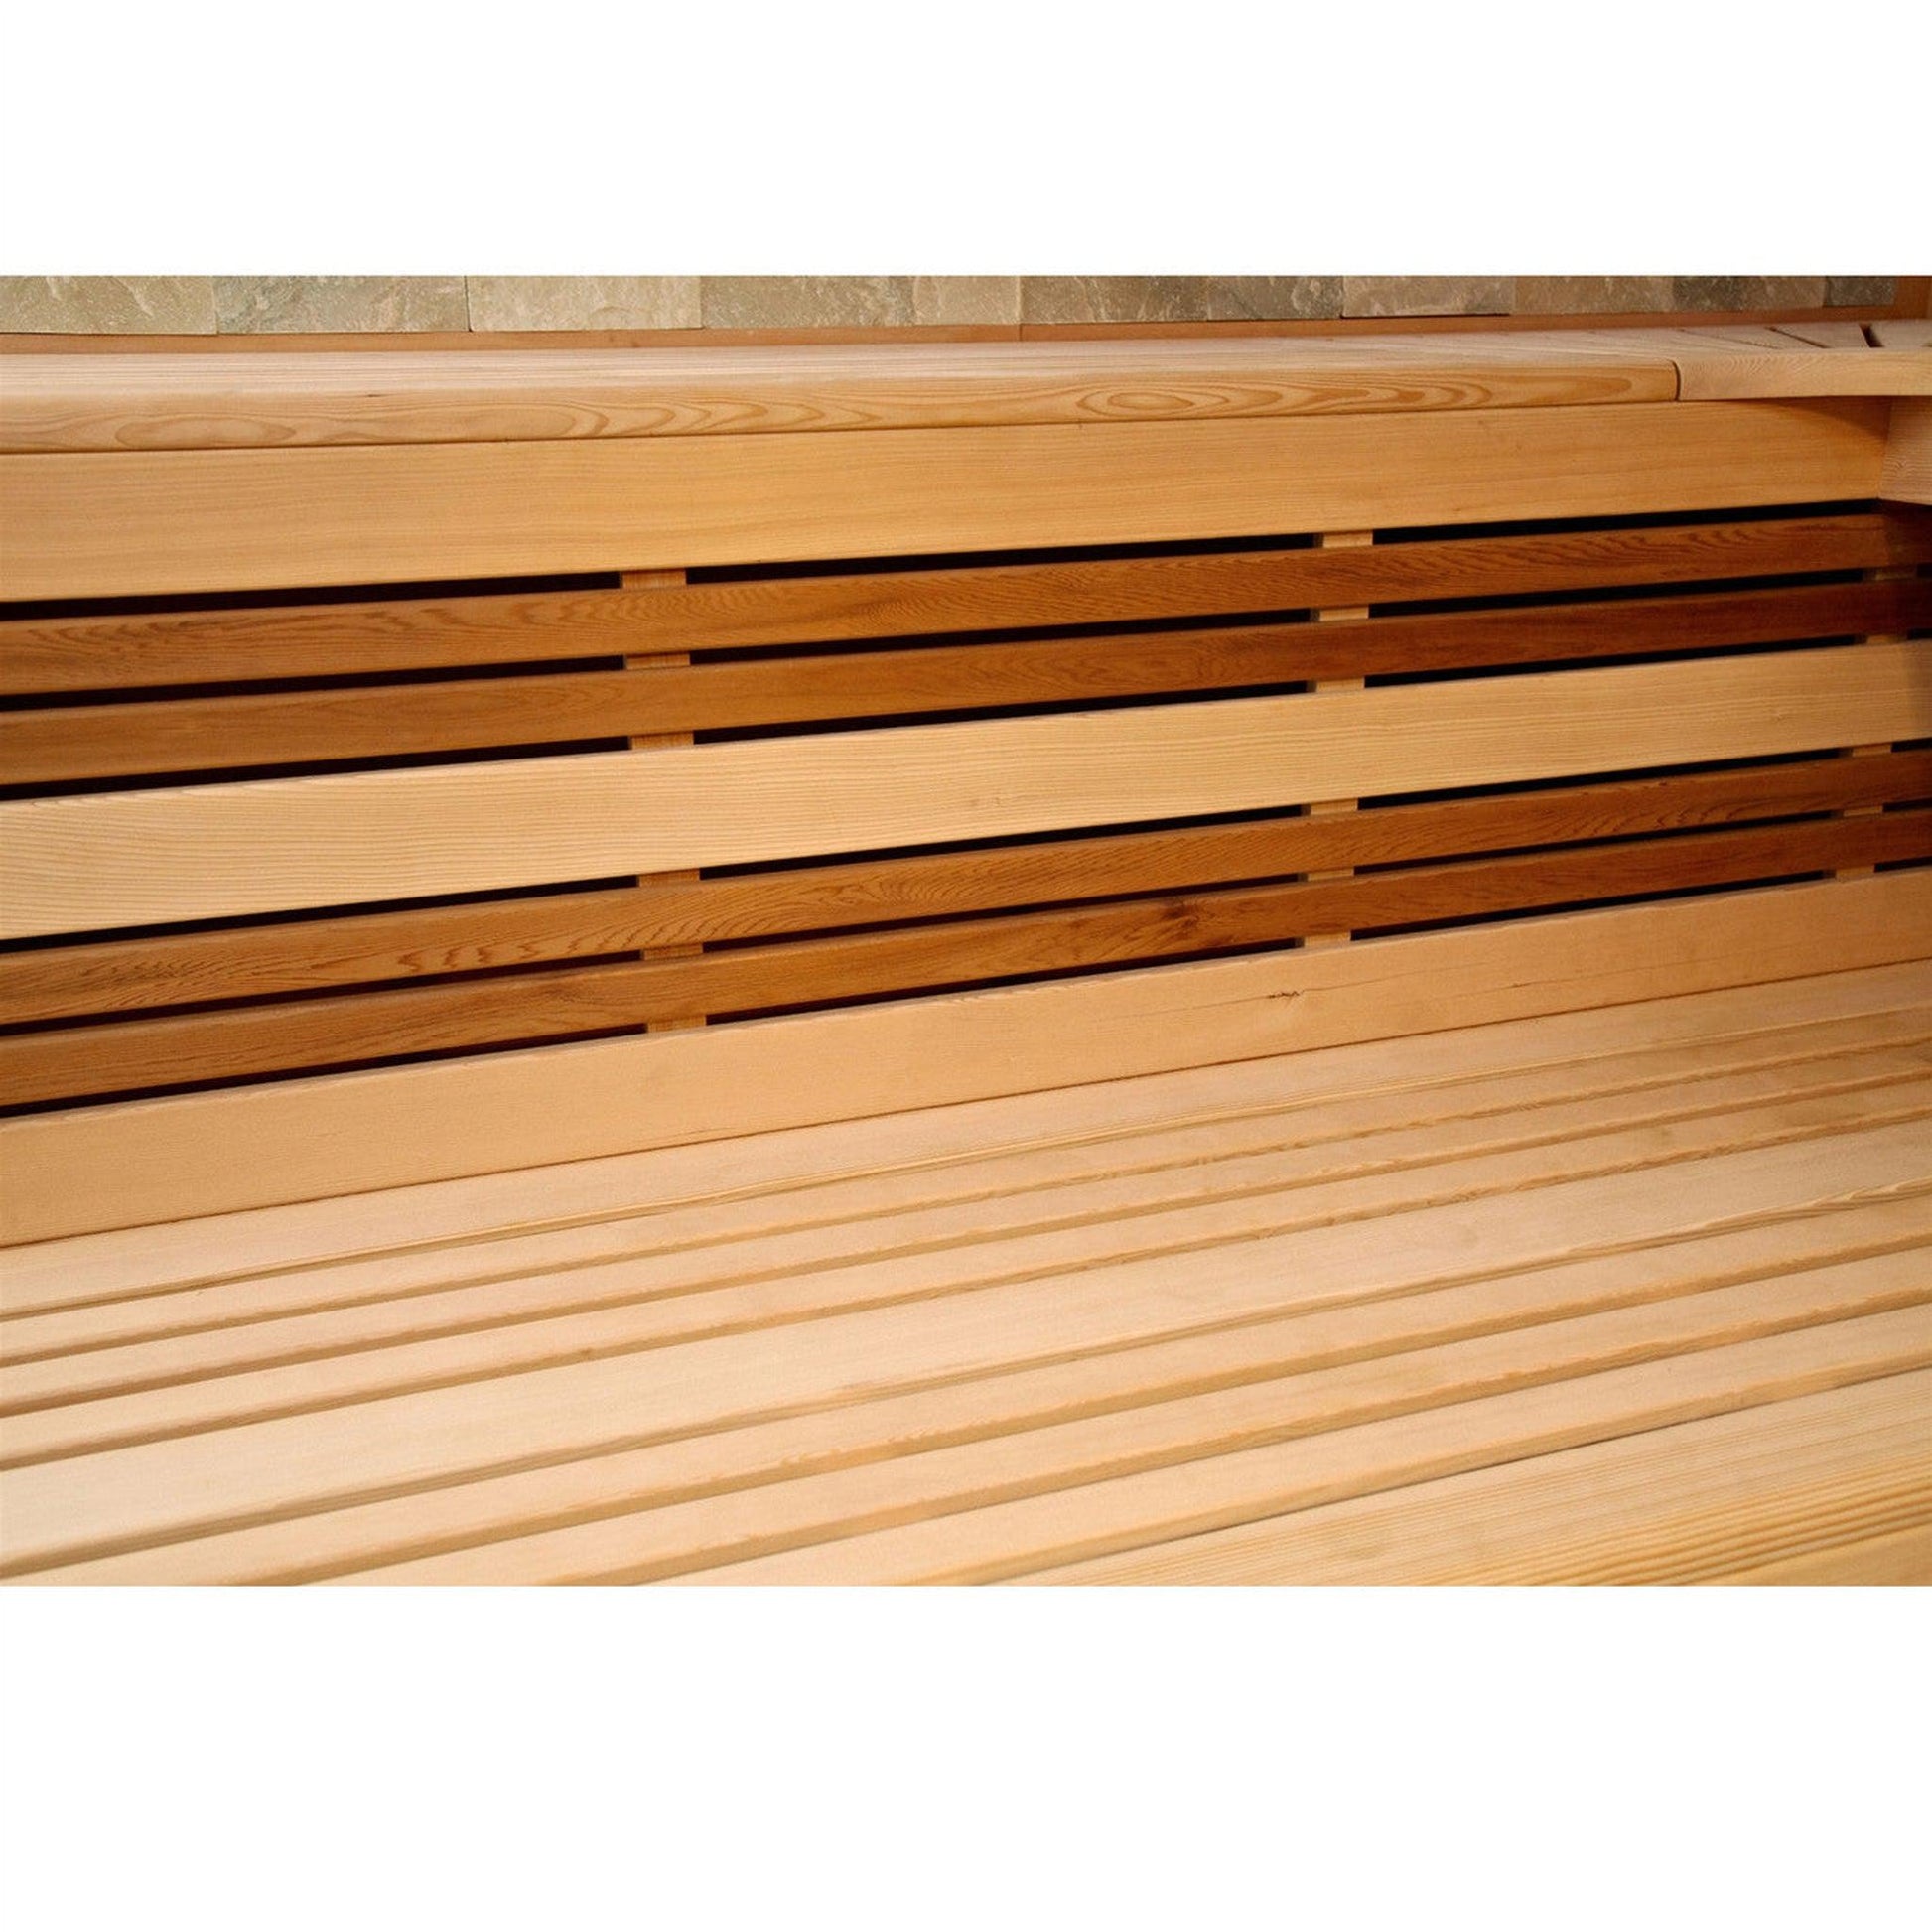 Aleko Canadian Hemlock 6-Person Indoor Wet Dry Steam Sauna With 6 kW ETL Certified Heater